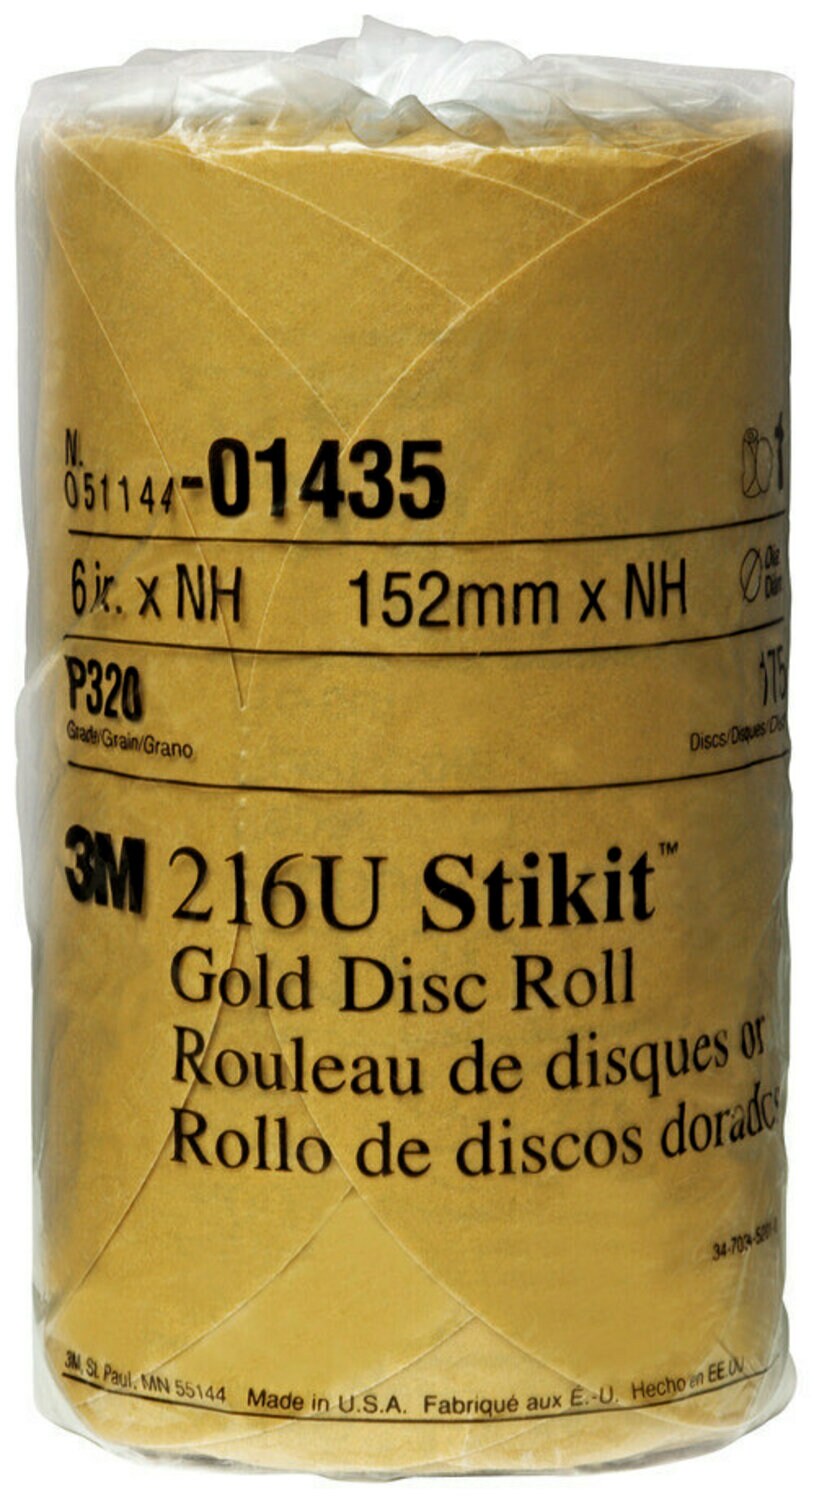 7000045430 - 3M Stikit Gold Disc Roll, 01435, 6 in, P320, 175 discs per roll, 6
rolls per case